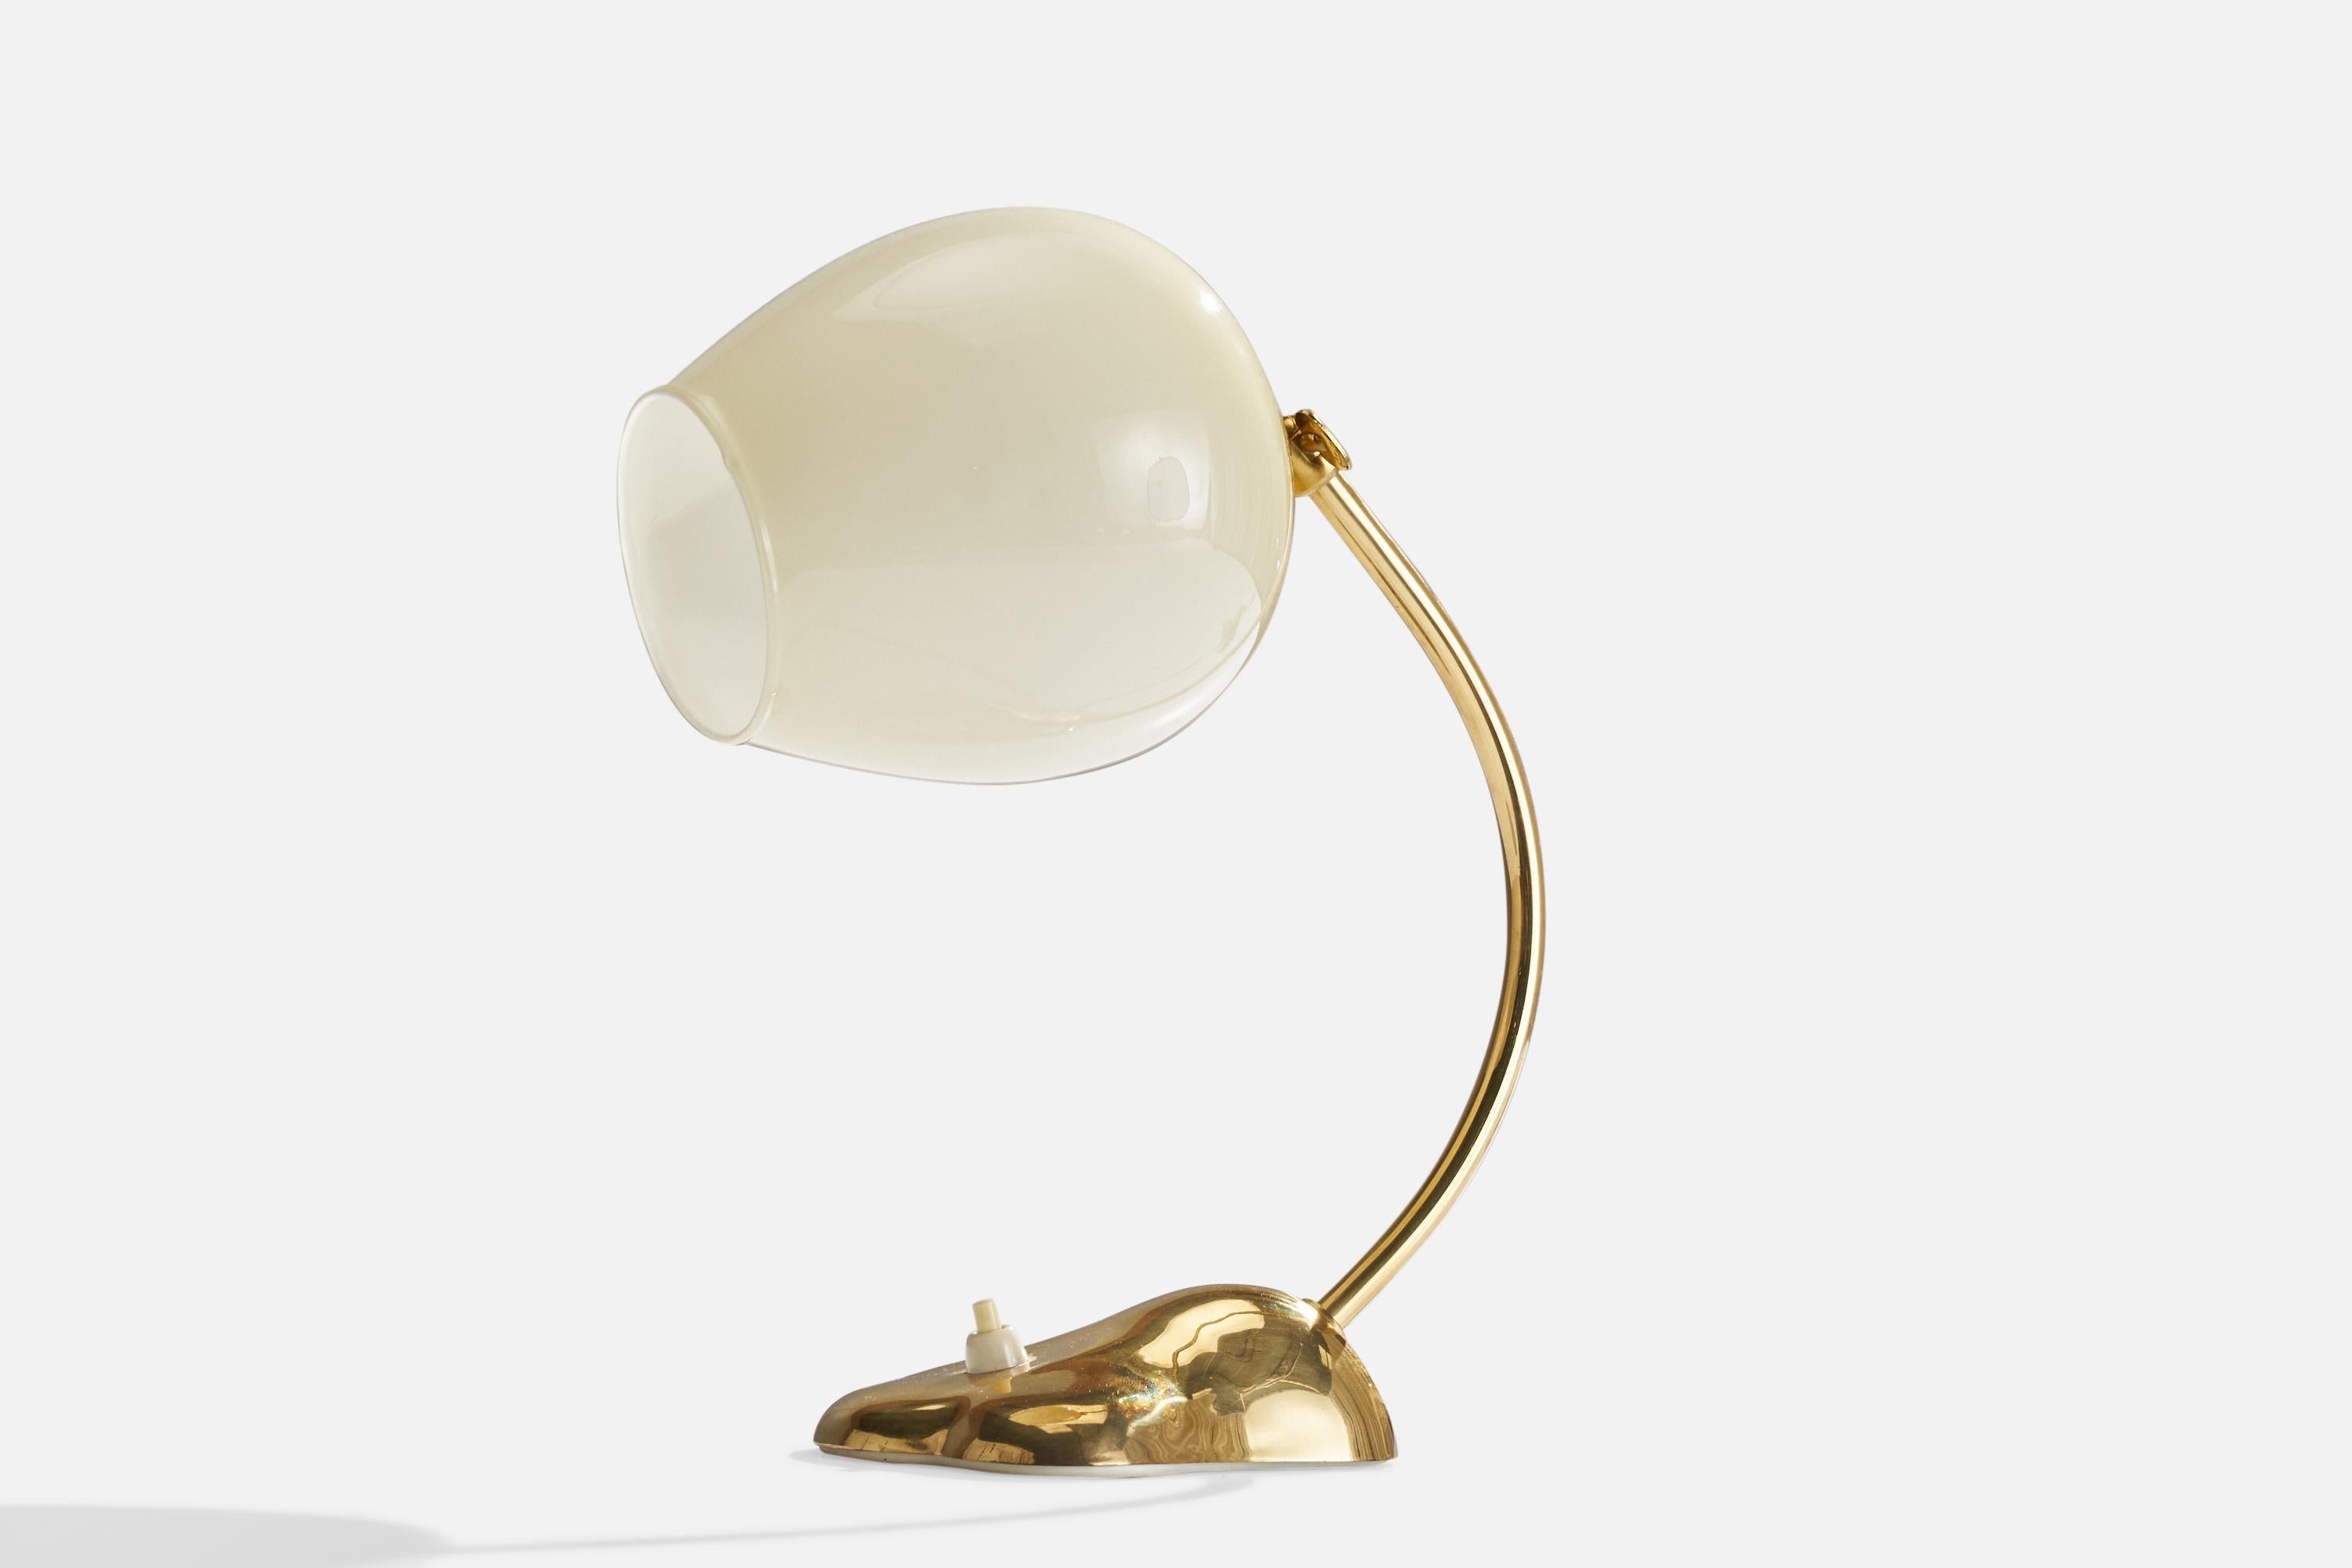 Lampe de table réglable en laiton et verre opalin, conçue et produite par Valinte/One, Finlande, années 1950.

Dimensions globales (pouces) : 11